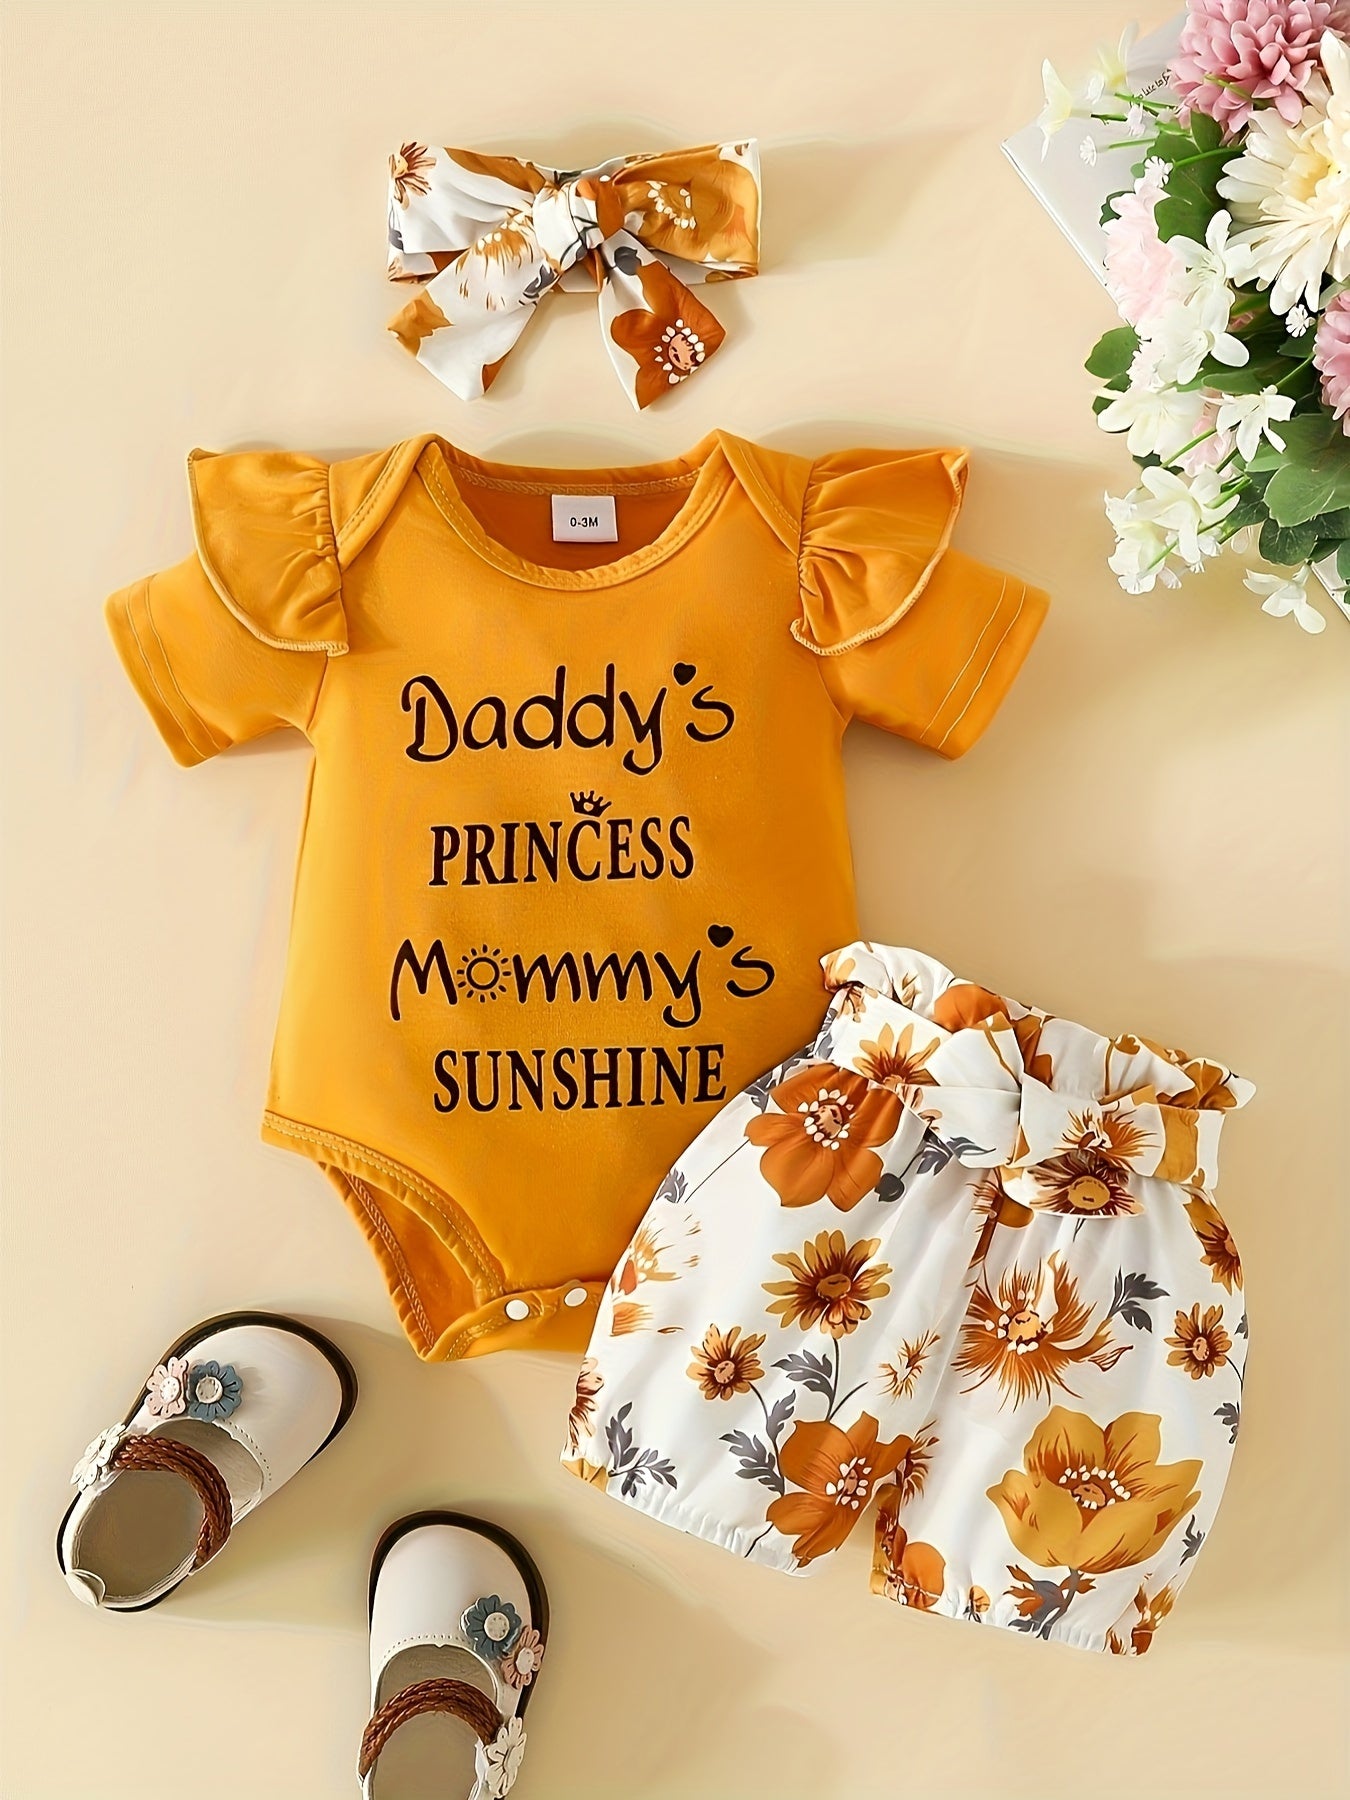 Baby Girl's "I'm My Daddy's Girl And My Mommy's World" Graphic Onesie & Floral Shorts & Headband Set